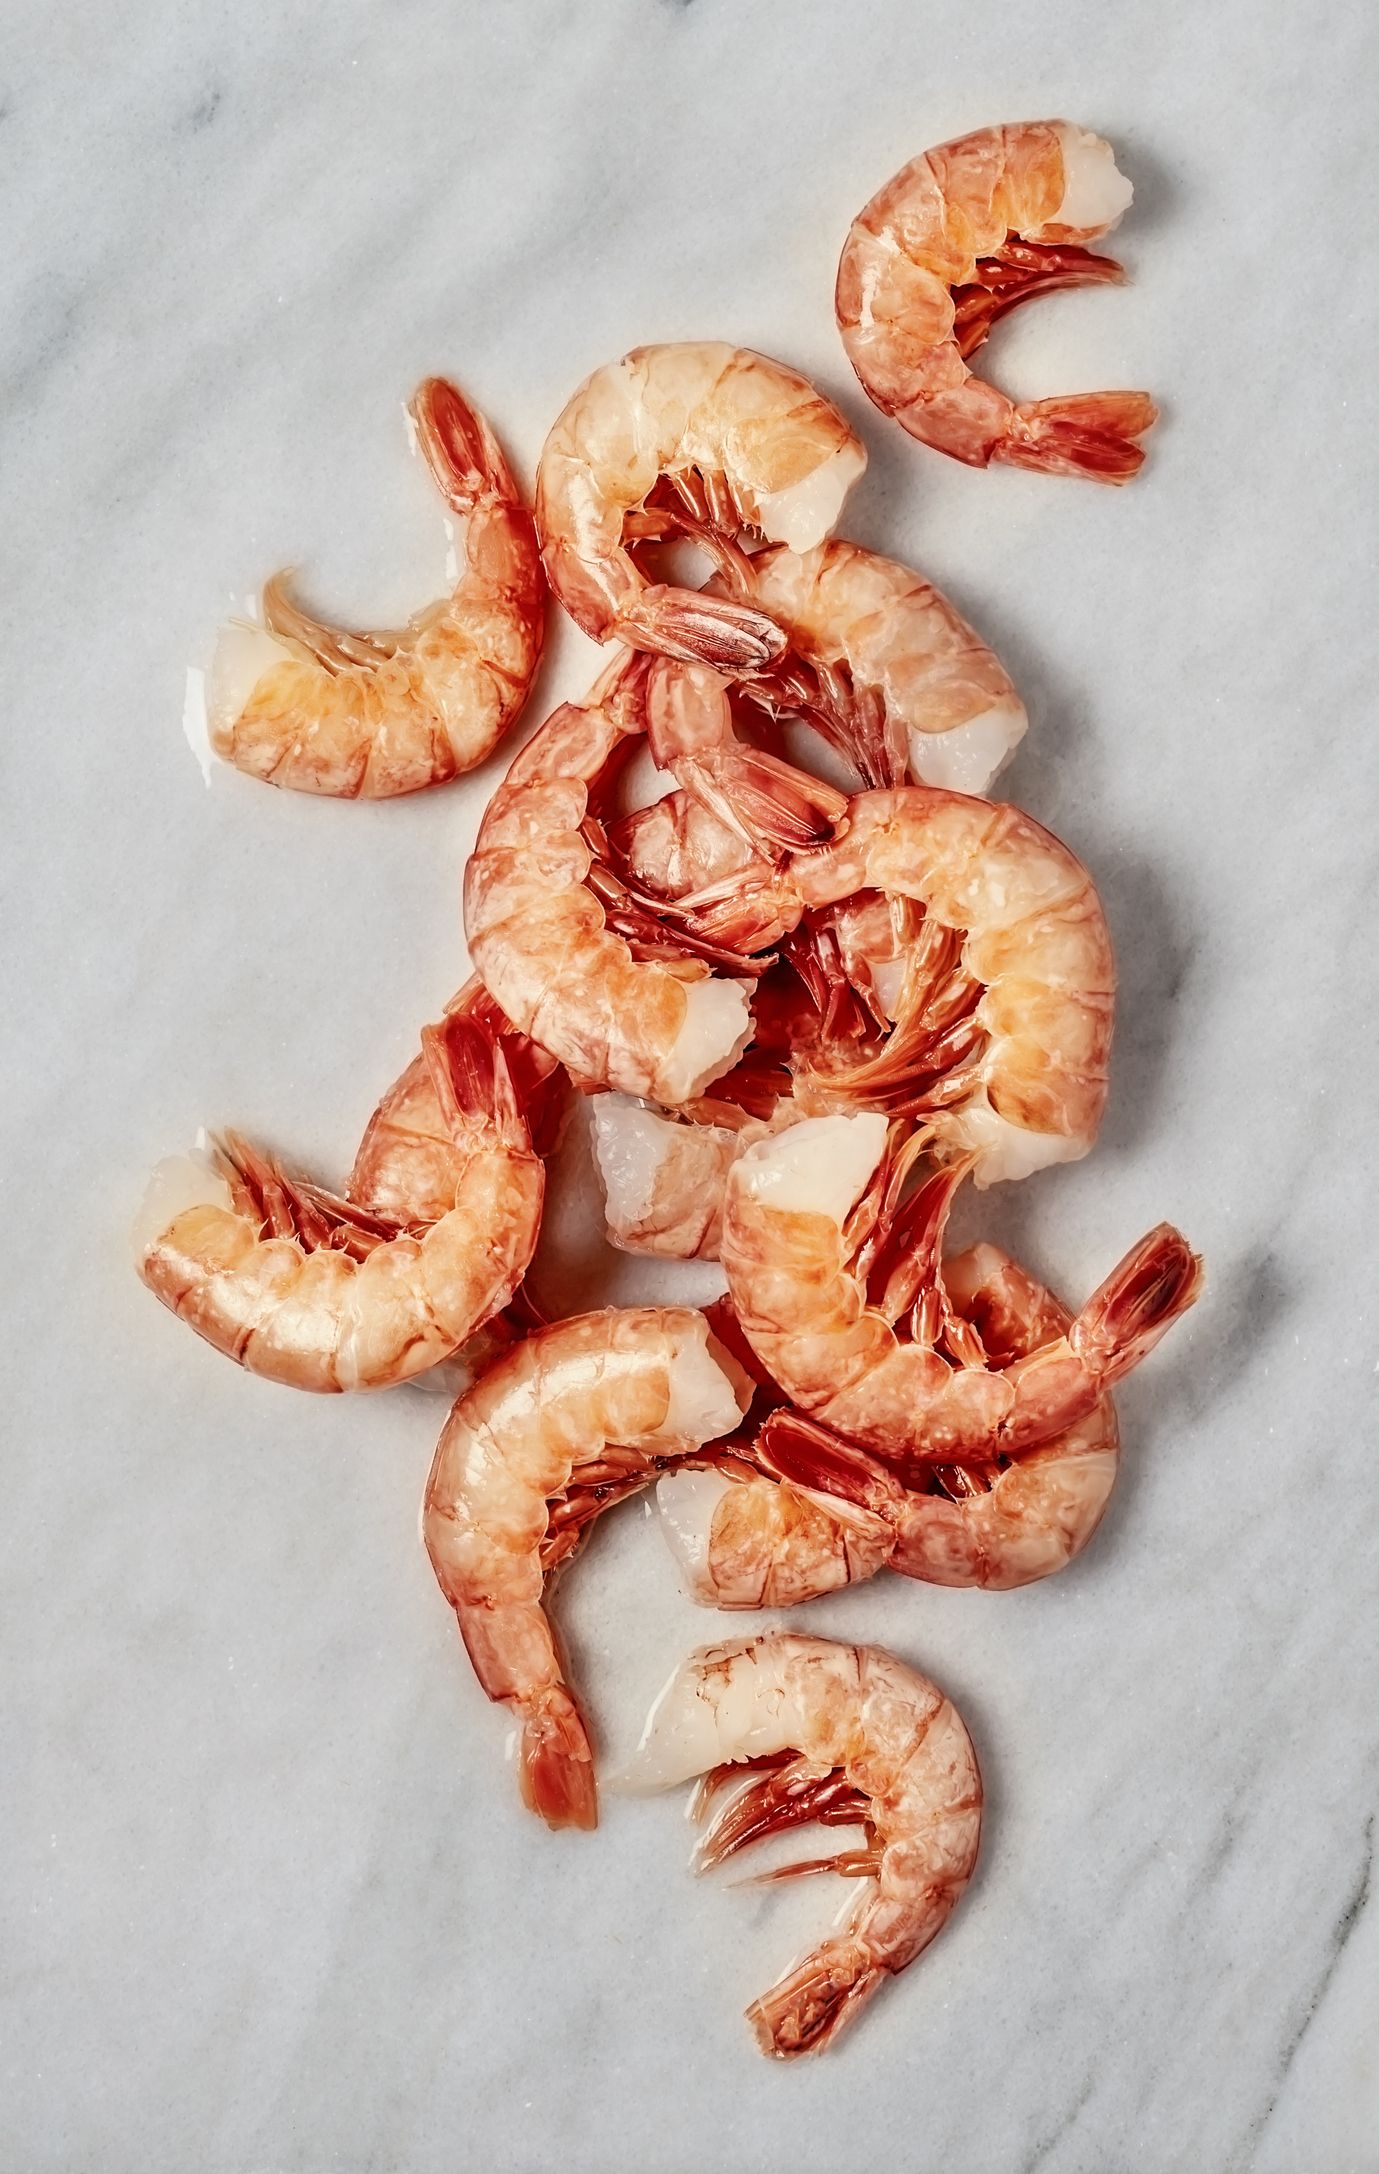 Shrimp, Food, Cuisine, Seafood, Dish, Recipe, Decapoda, Caridean shrimp, Seafood boil, Crustacean, 